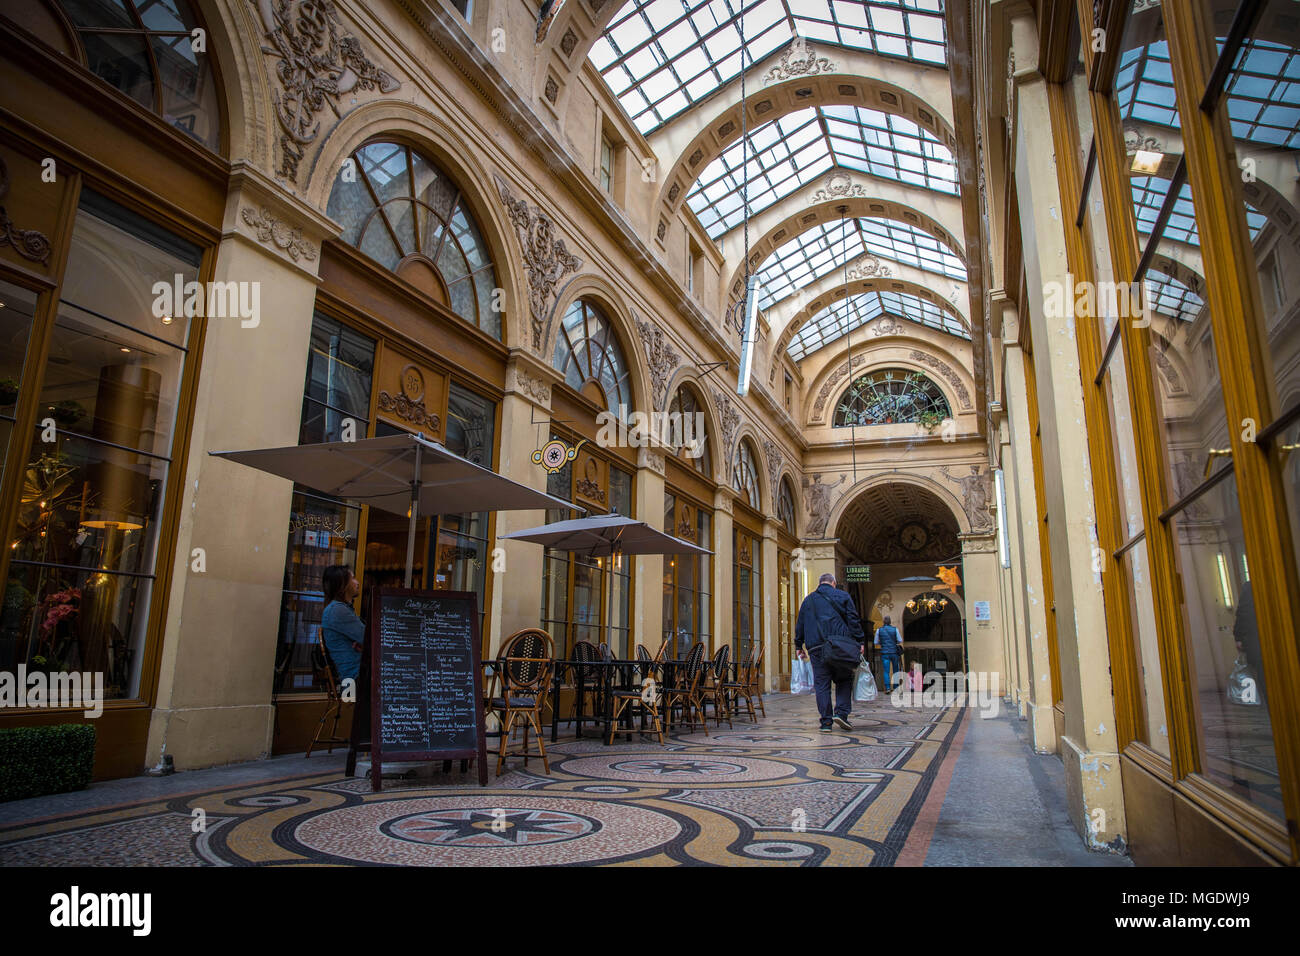 Galerie Vivienne, Onu des plus beaux passaggi couvert de Paris Foto Stock